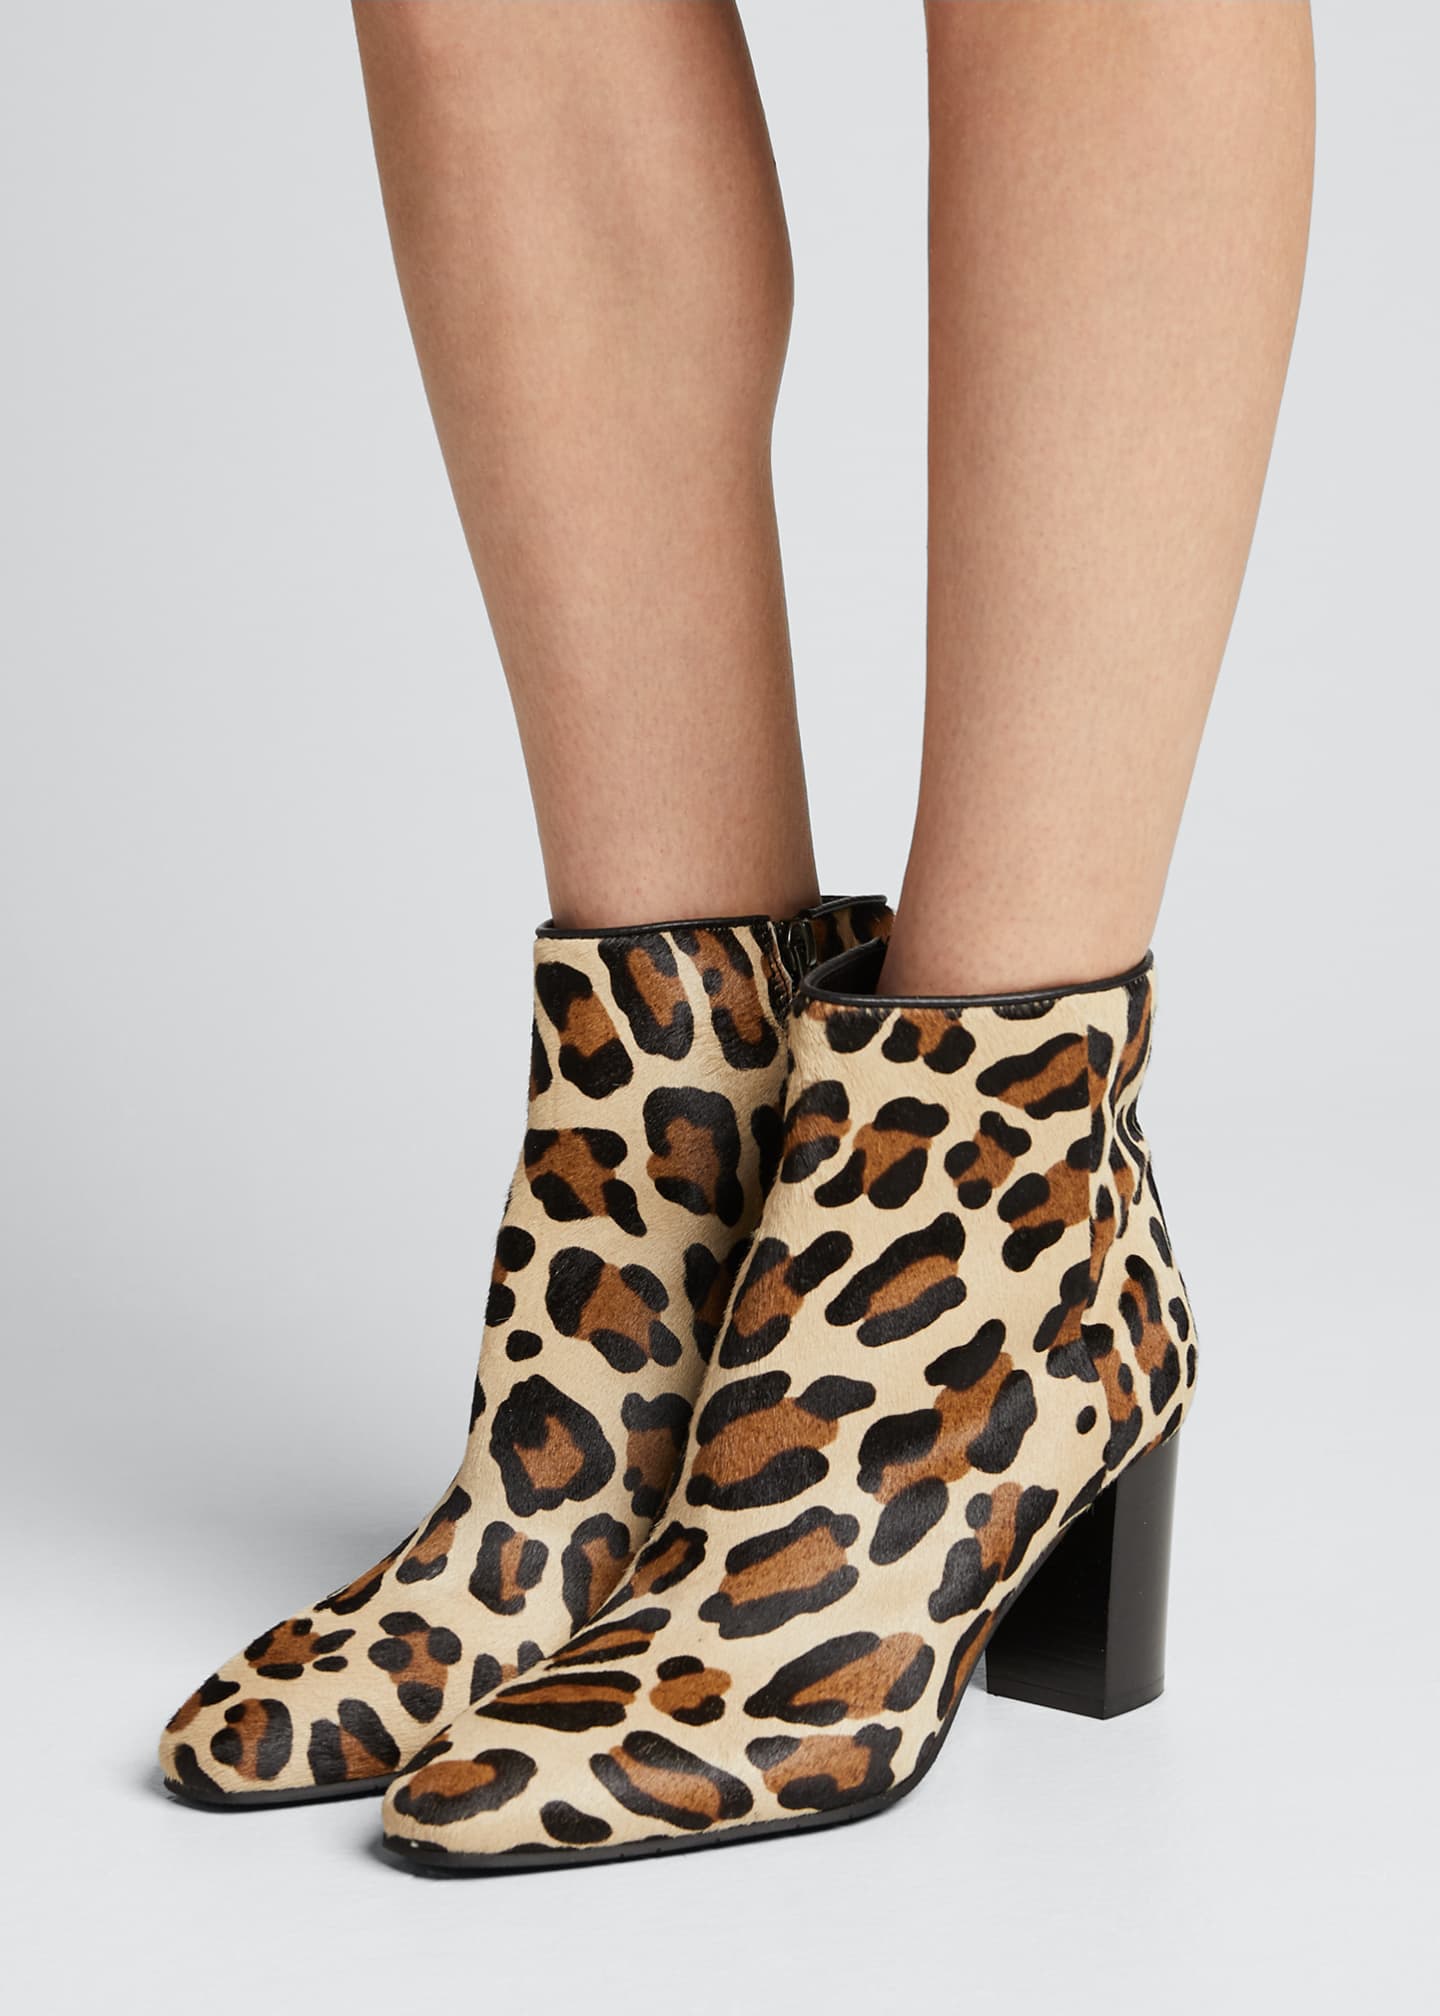 aquatalia leopard boots